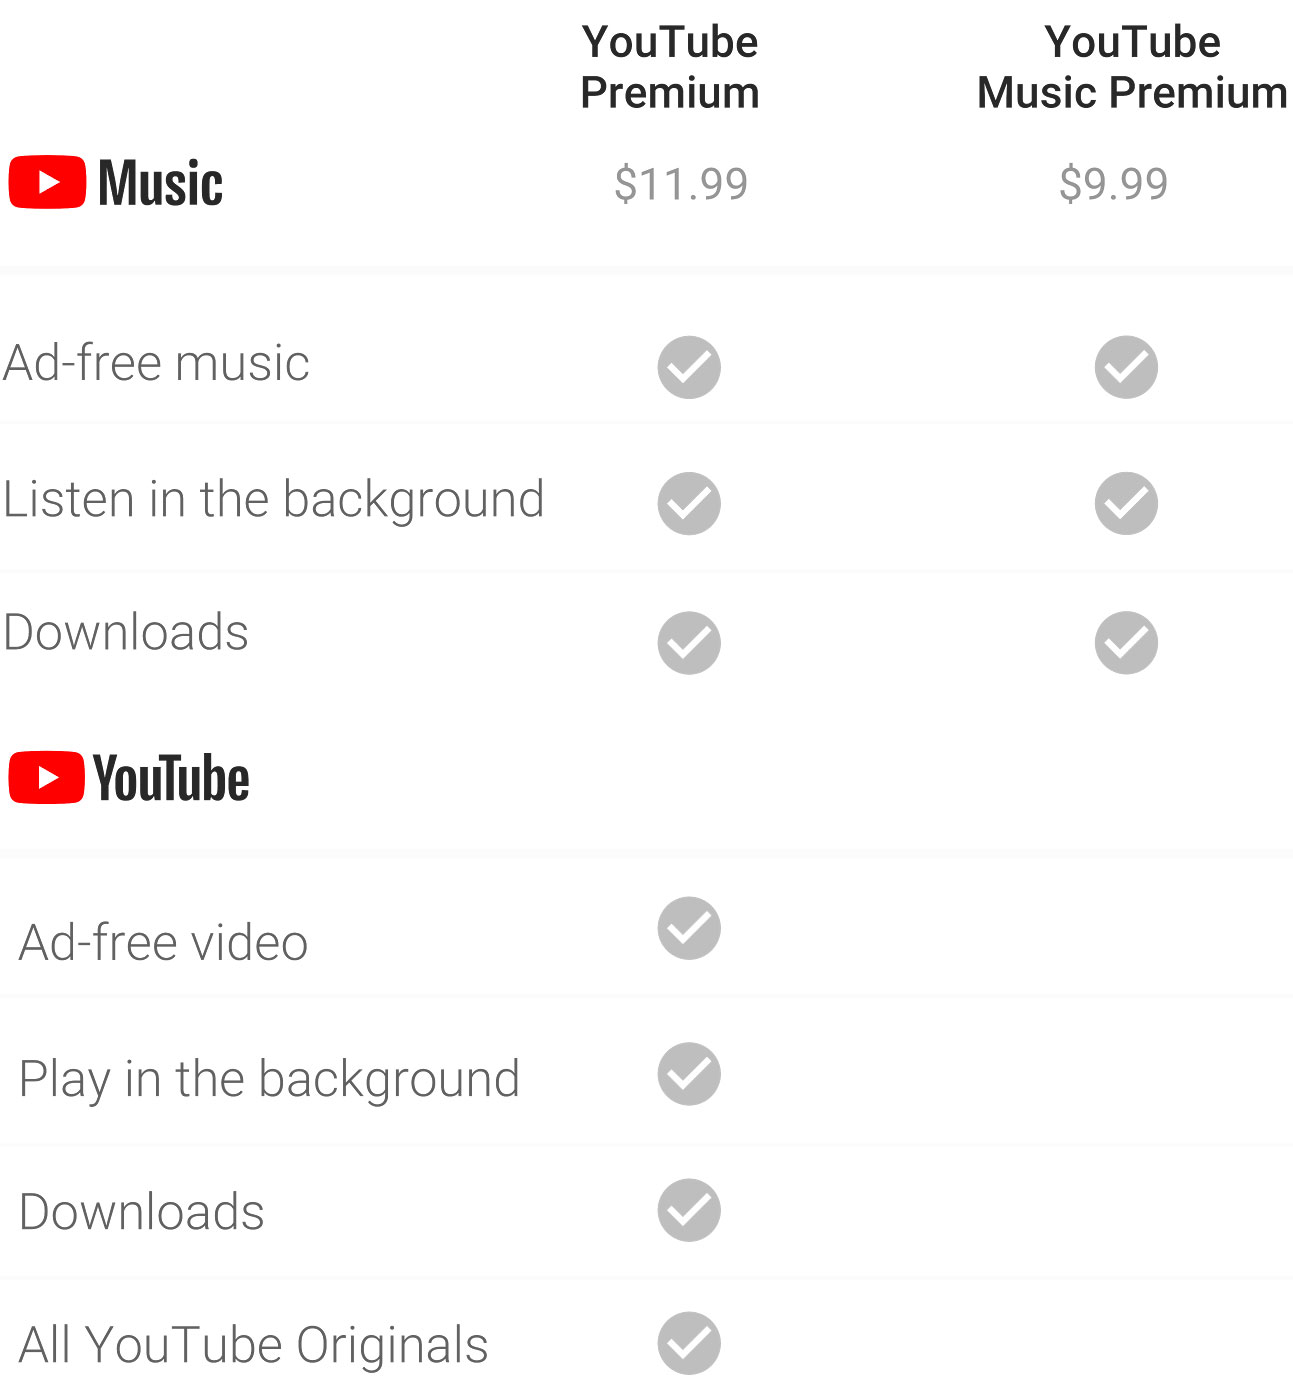 Precios de YouTube Music y YouTube Premium